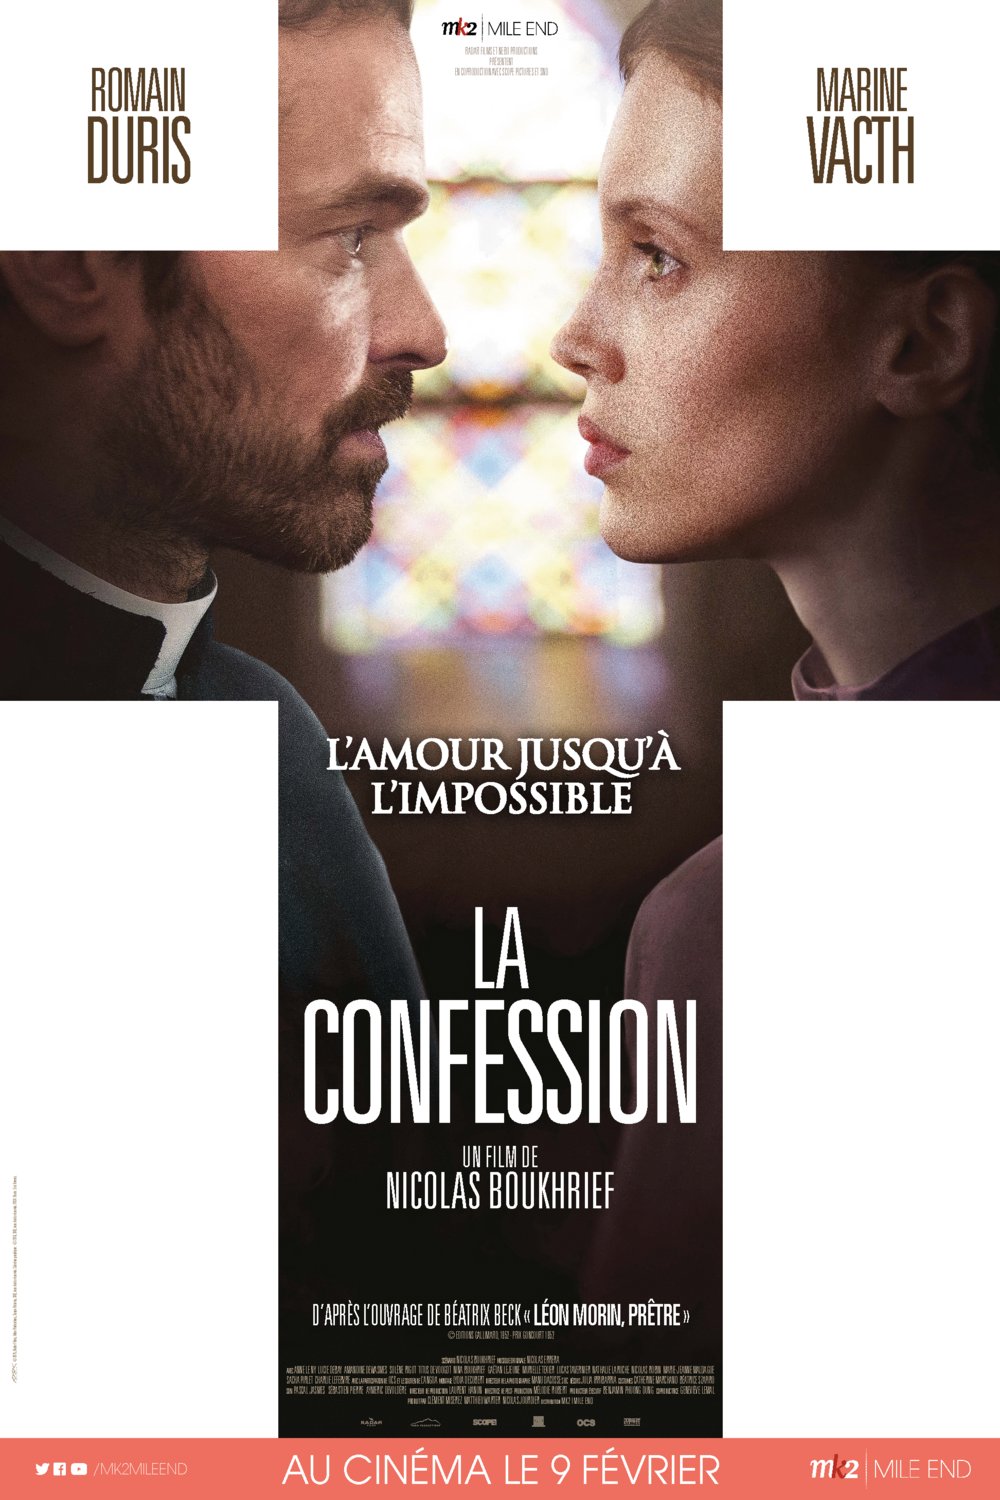 L'affiche du film La Confession v.f.